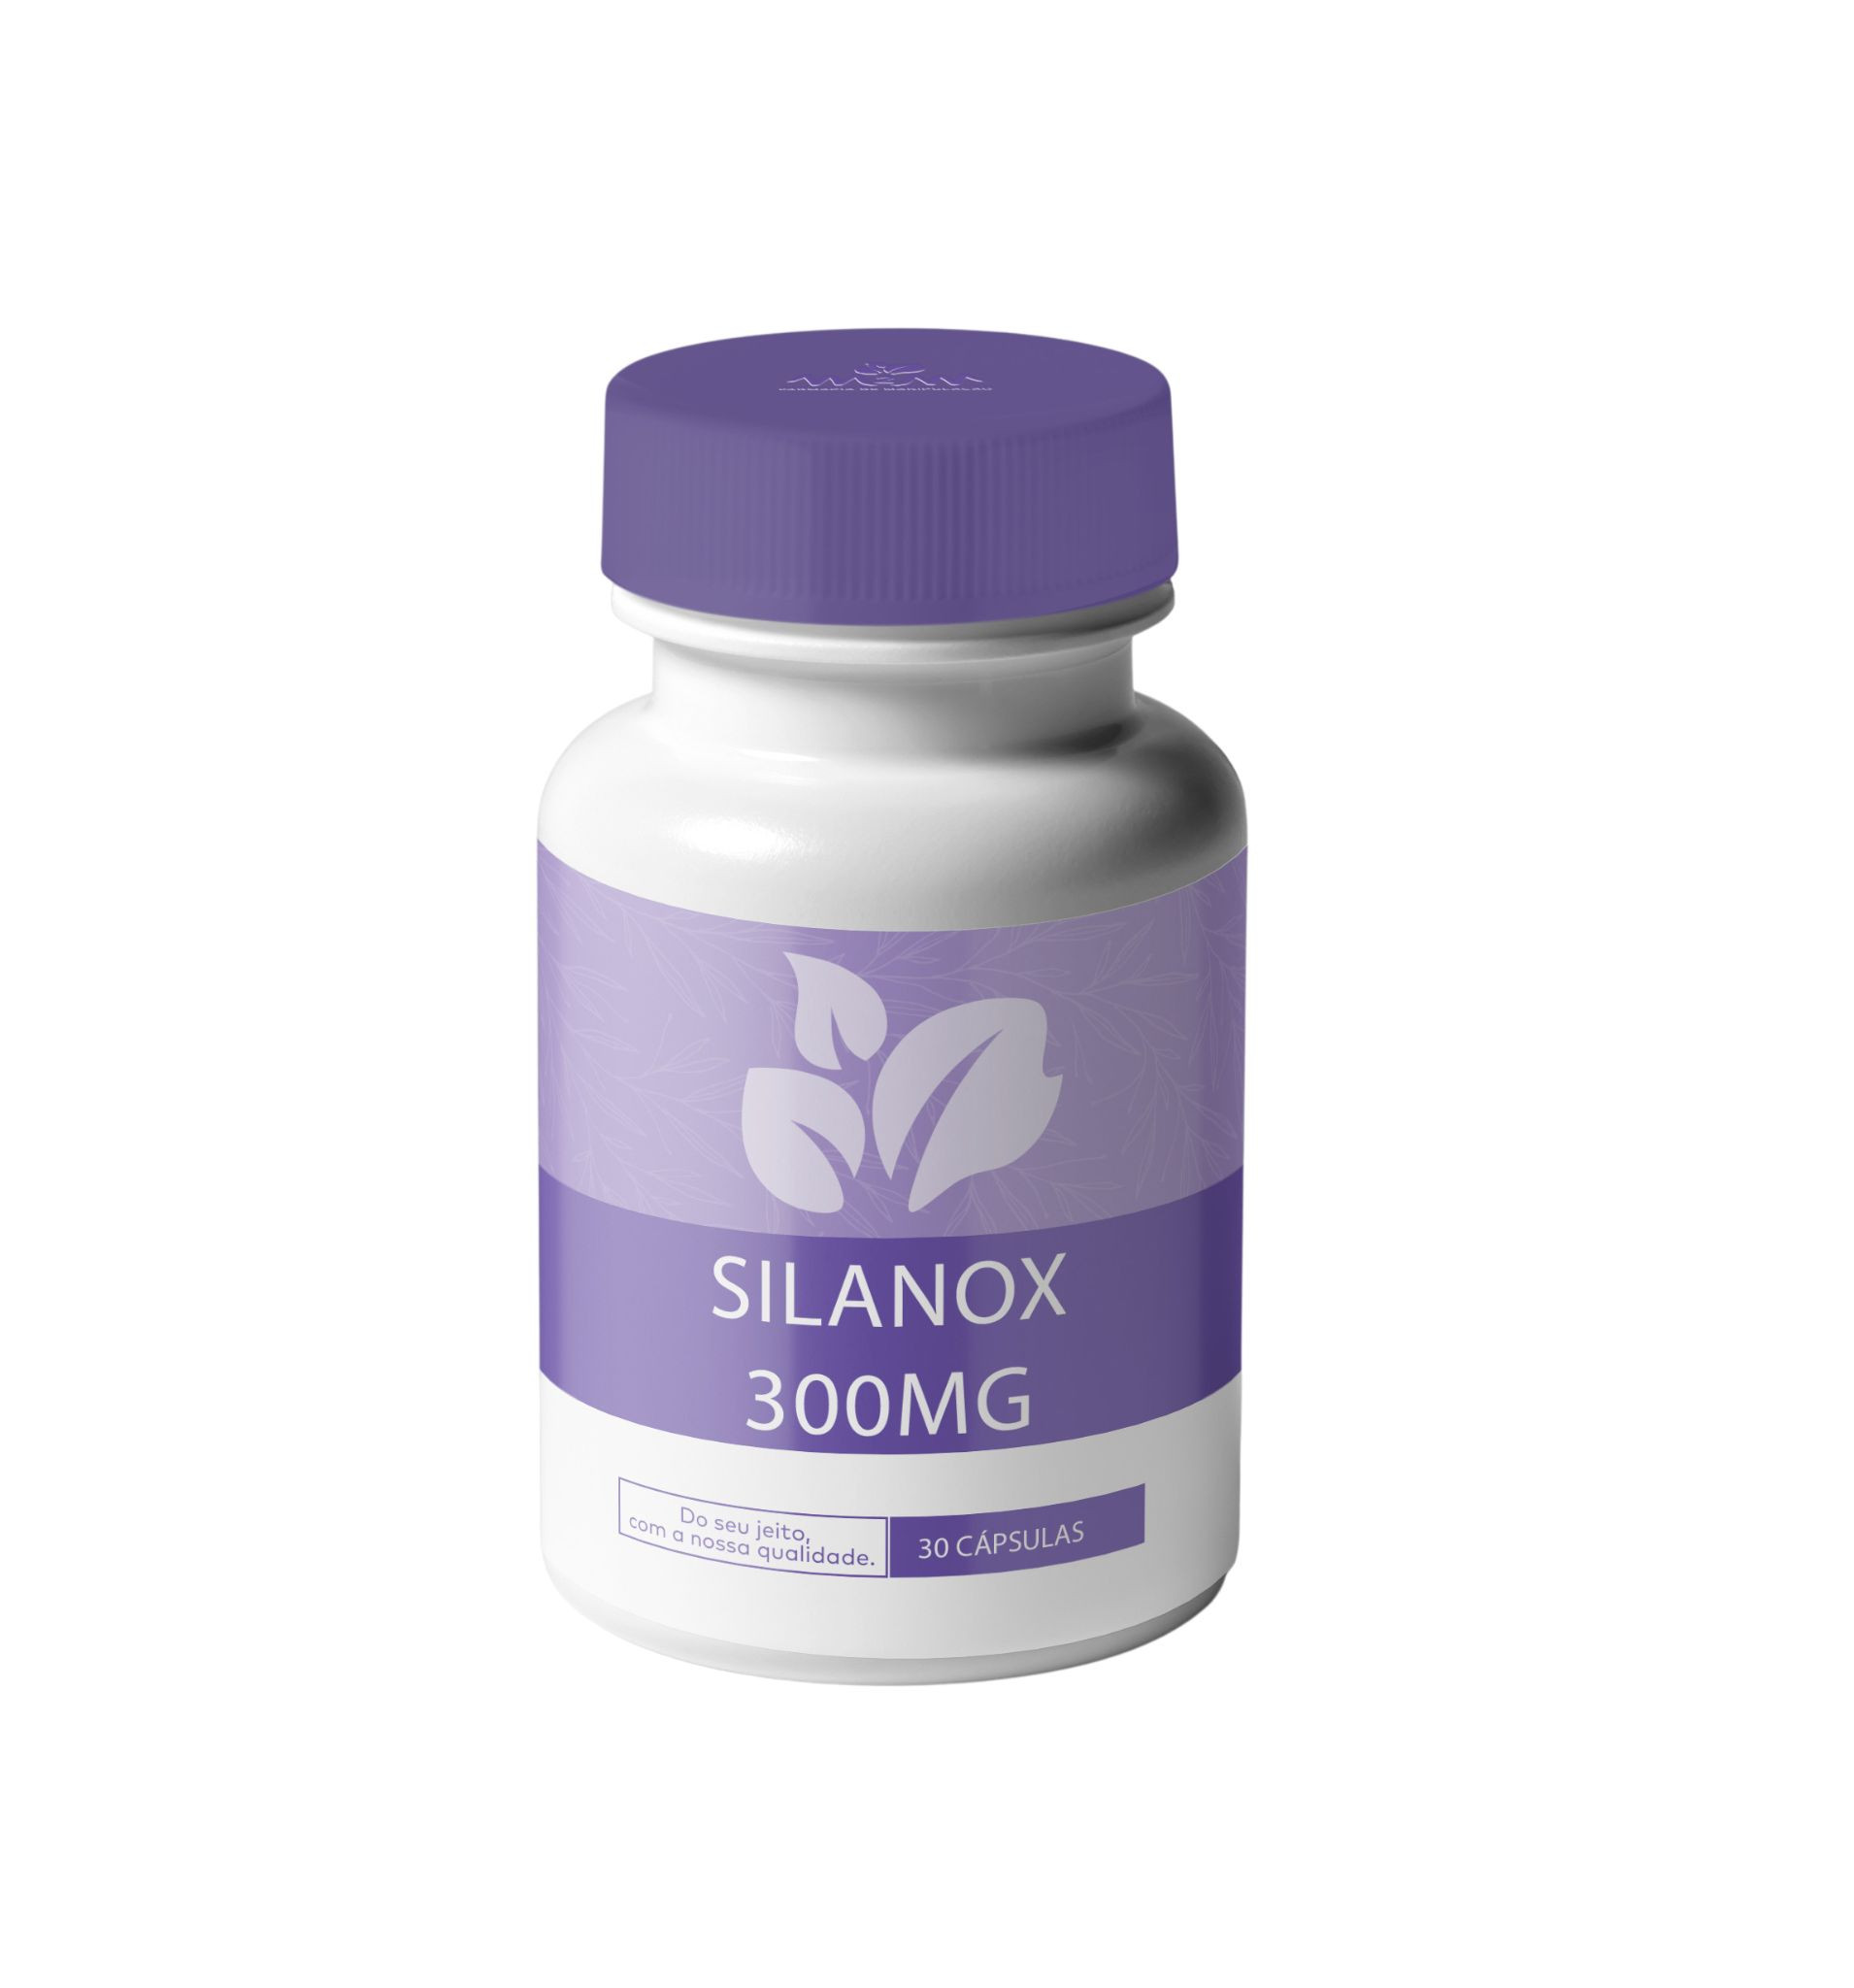 SilanoX 300MG - Cápsulas que ajudam a reduzir a absorção de alumínio do organismo